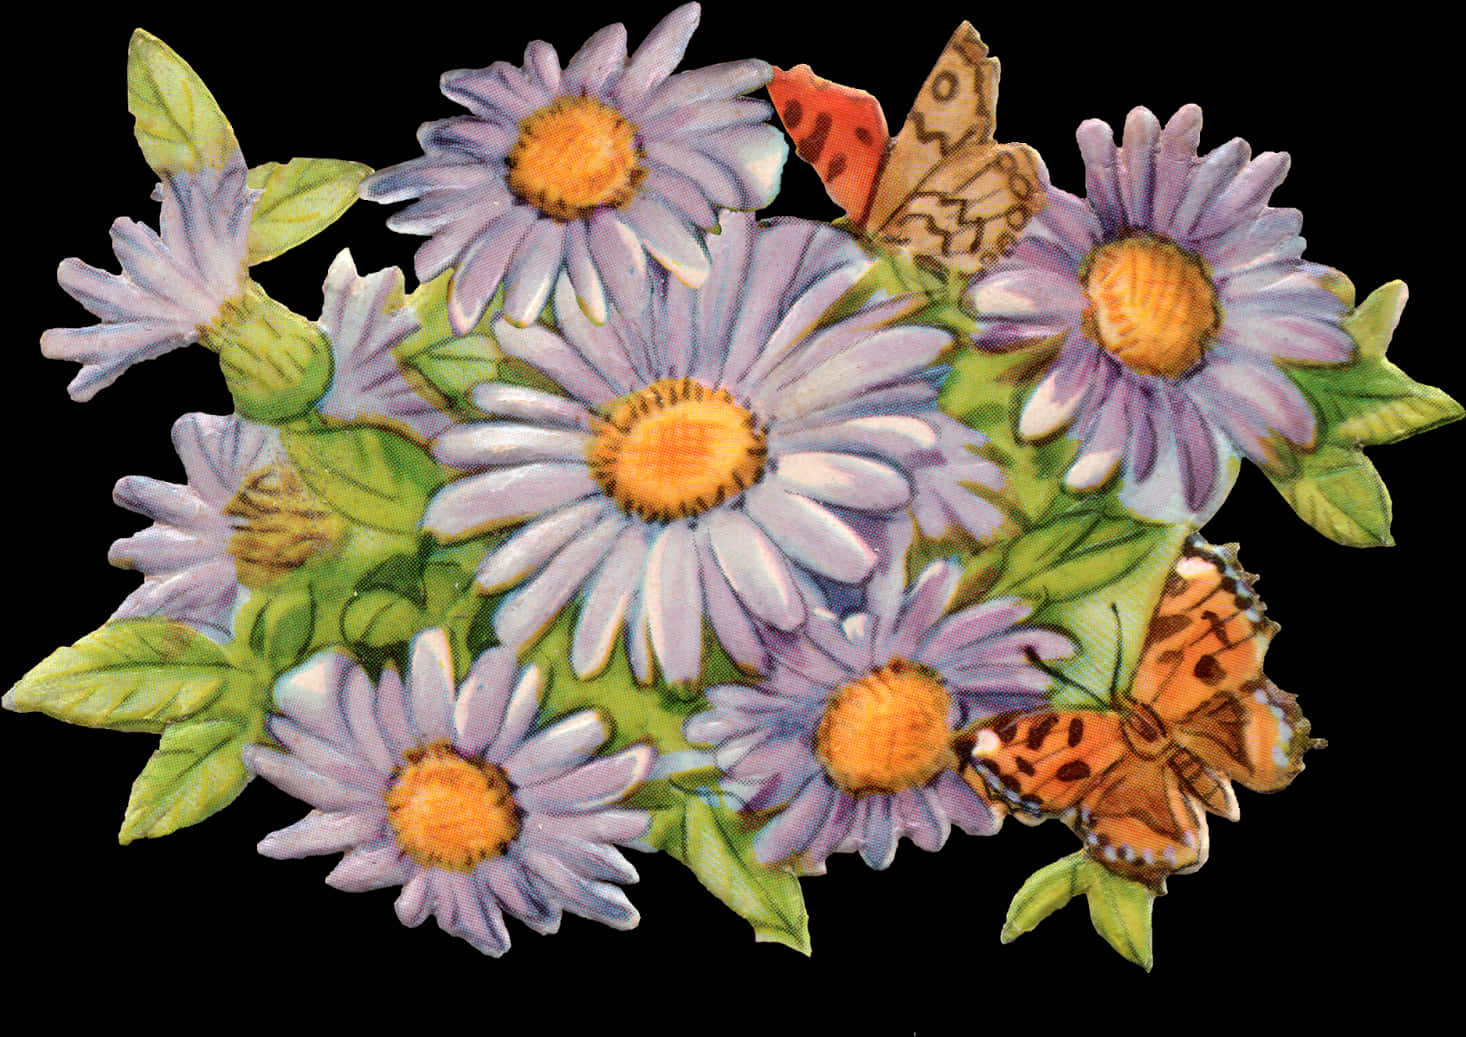 Vintage Daisyand Butterflies Illustration